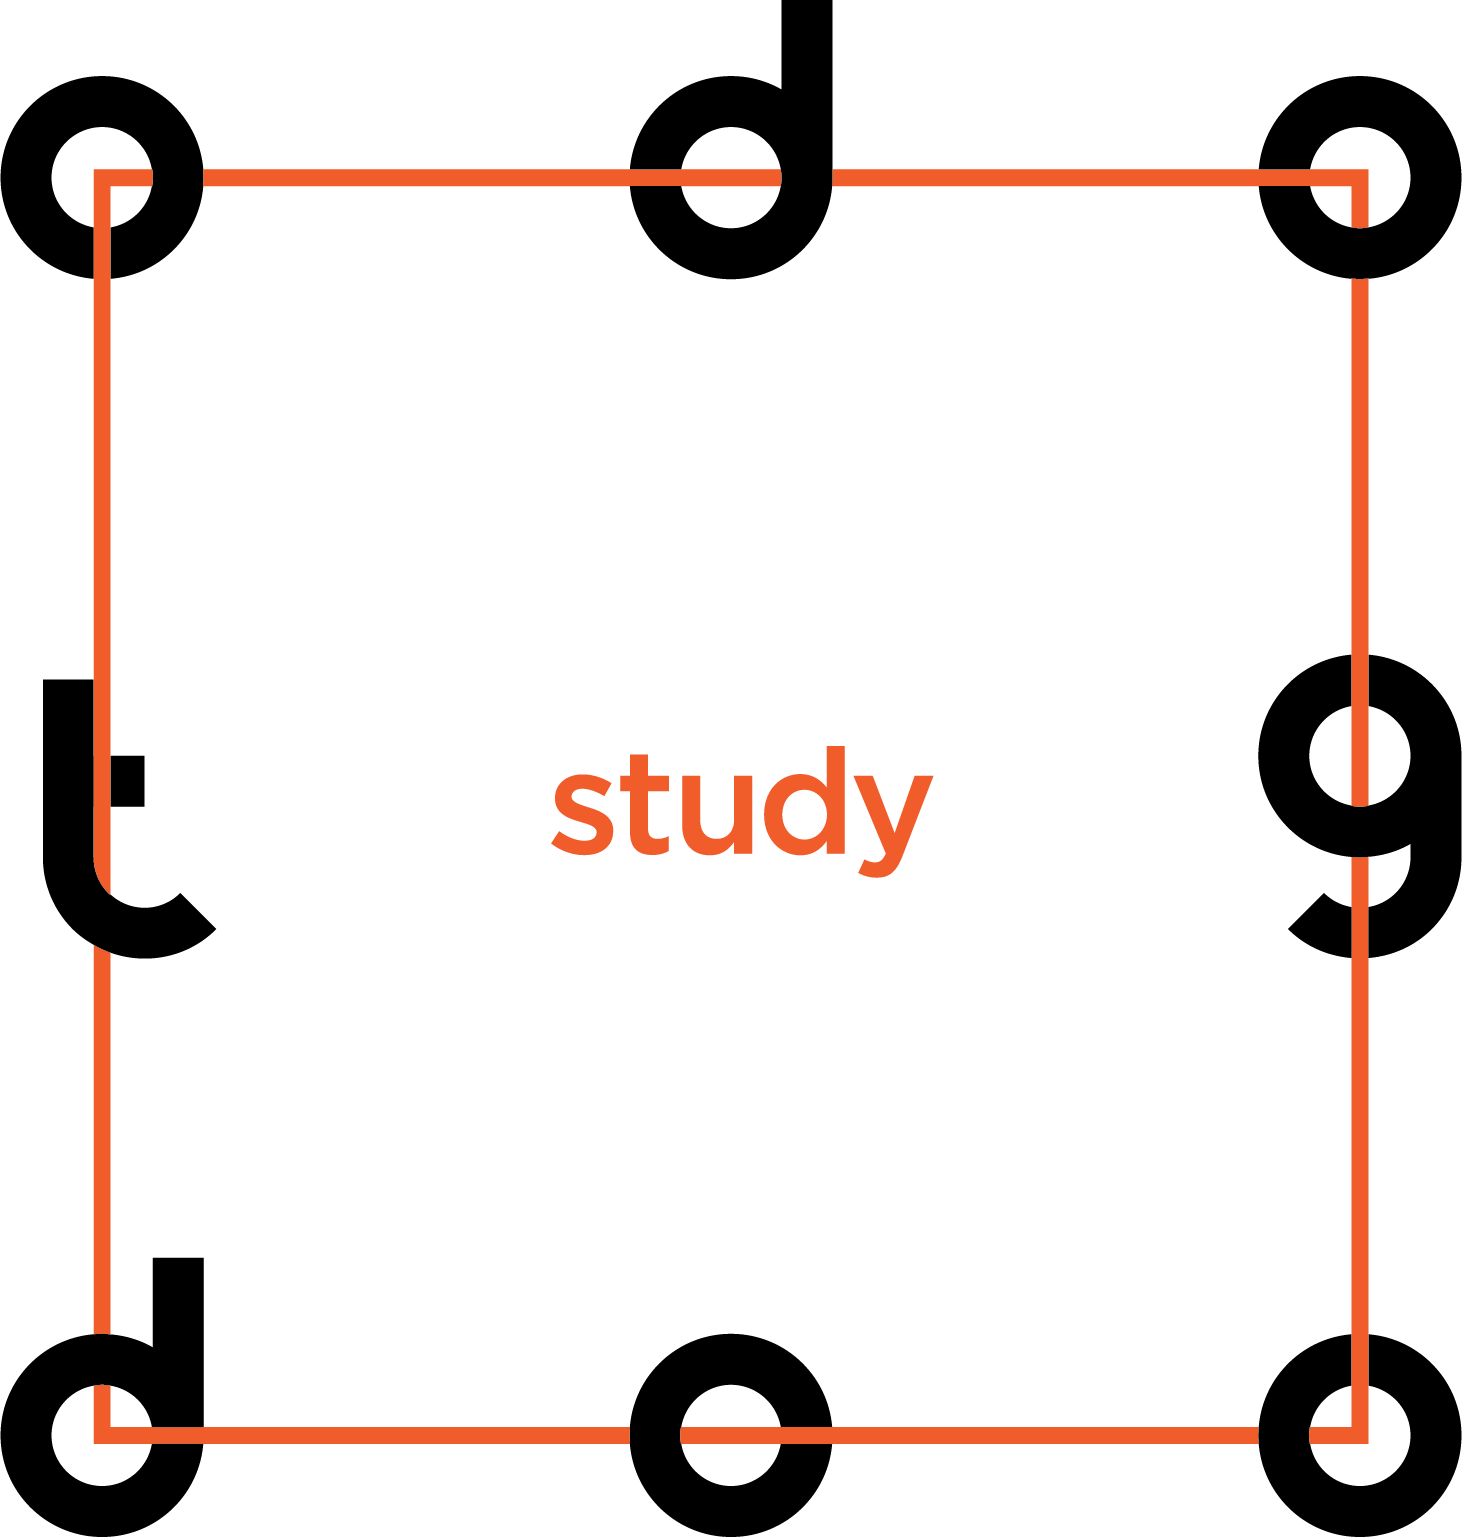 todogood study - образовательная платформа для тех, кто хочет «прокачать» soft skills